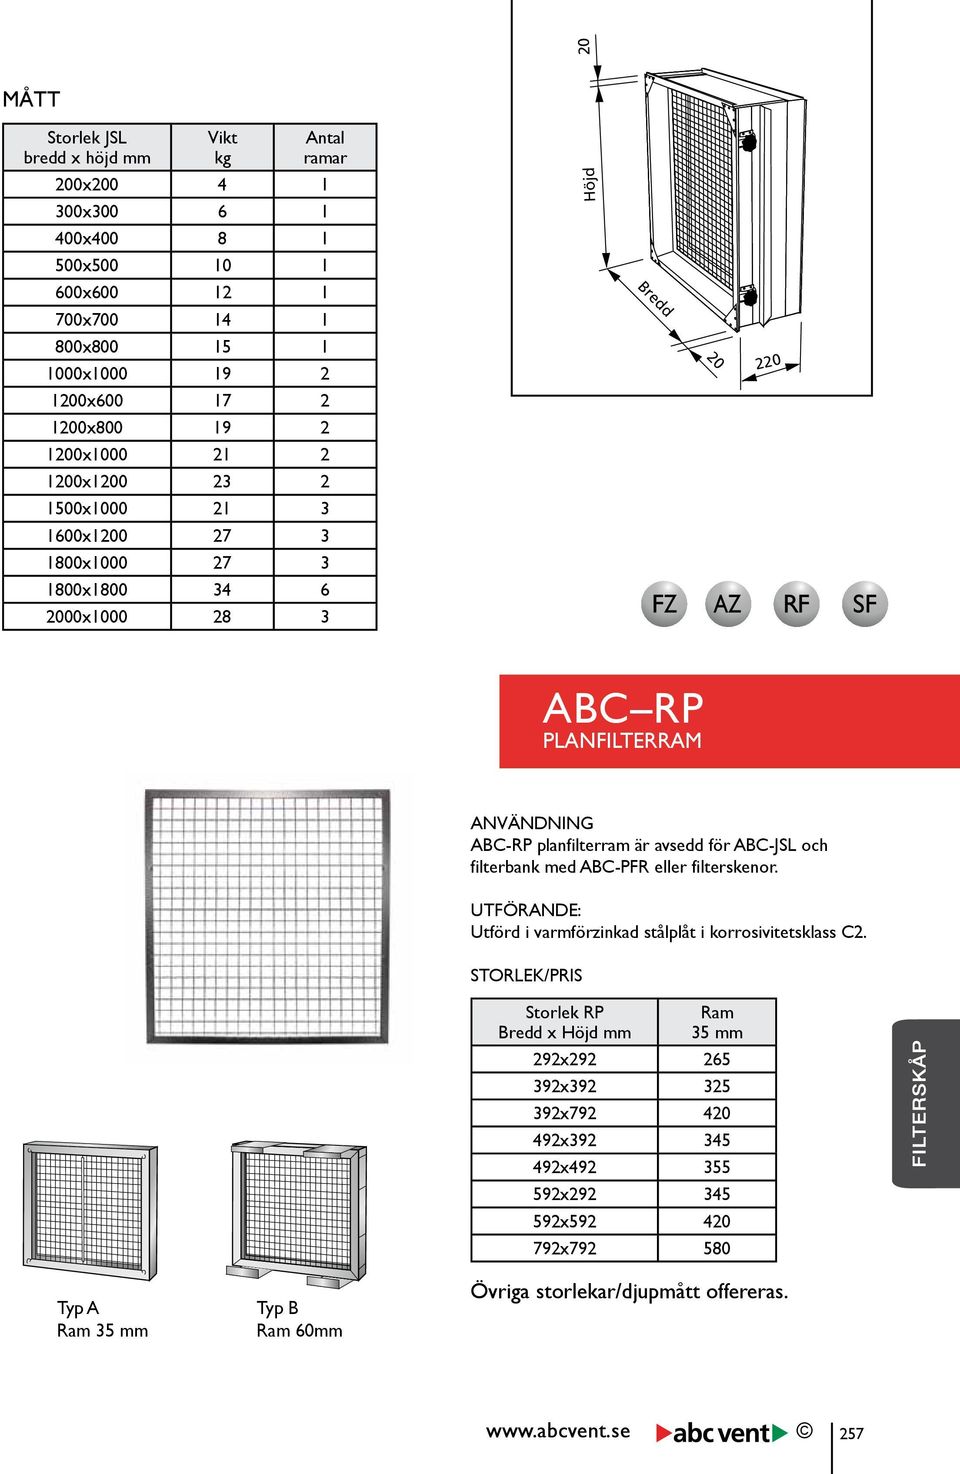 60mm ABC-RP planfilterram är avsedd för ABC-JSL och filterbank med ABC-PFR eller filterskenor. UTFÖRANDE: Utförd i varmförzinkad stålplåt i korrosivitetsklass C2.